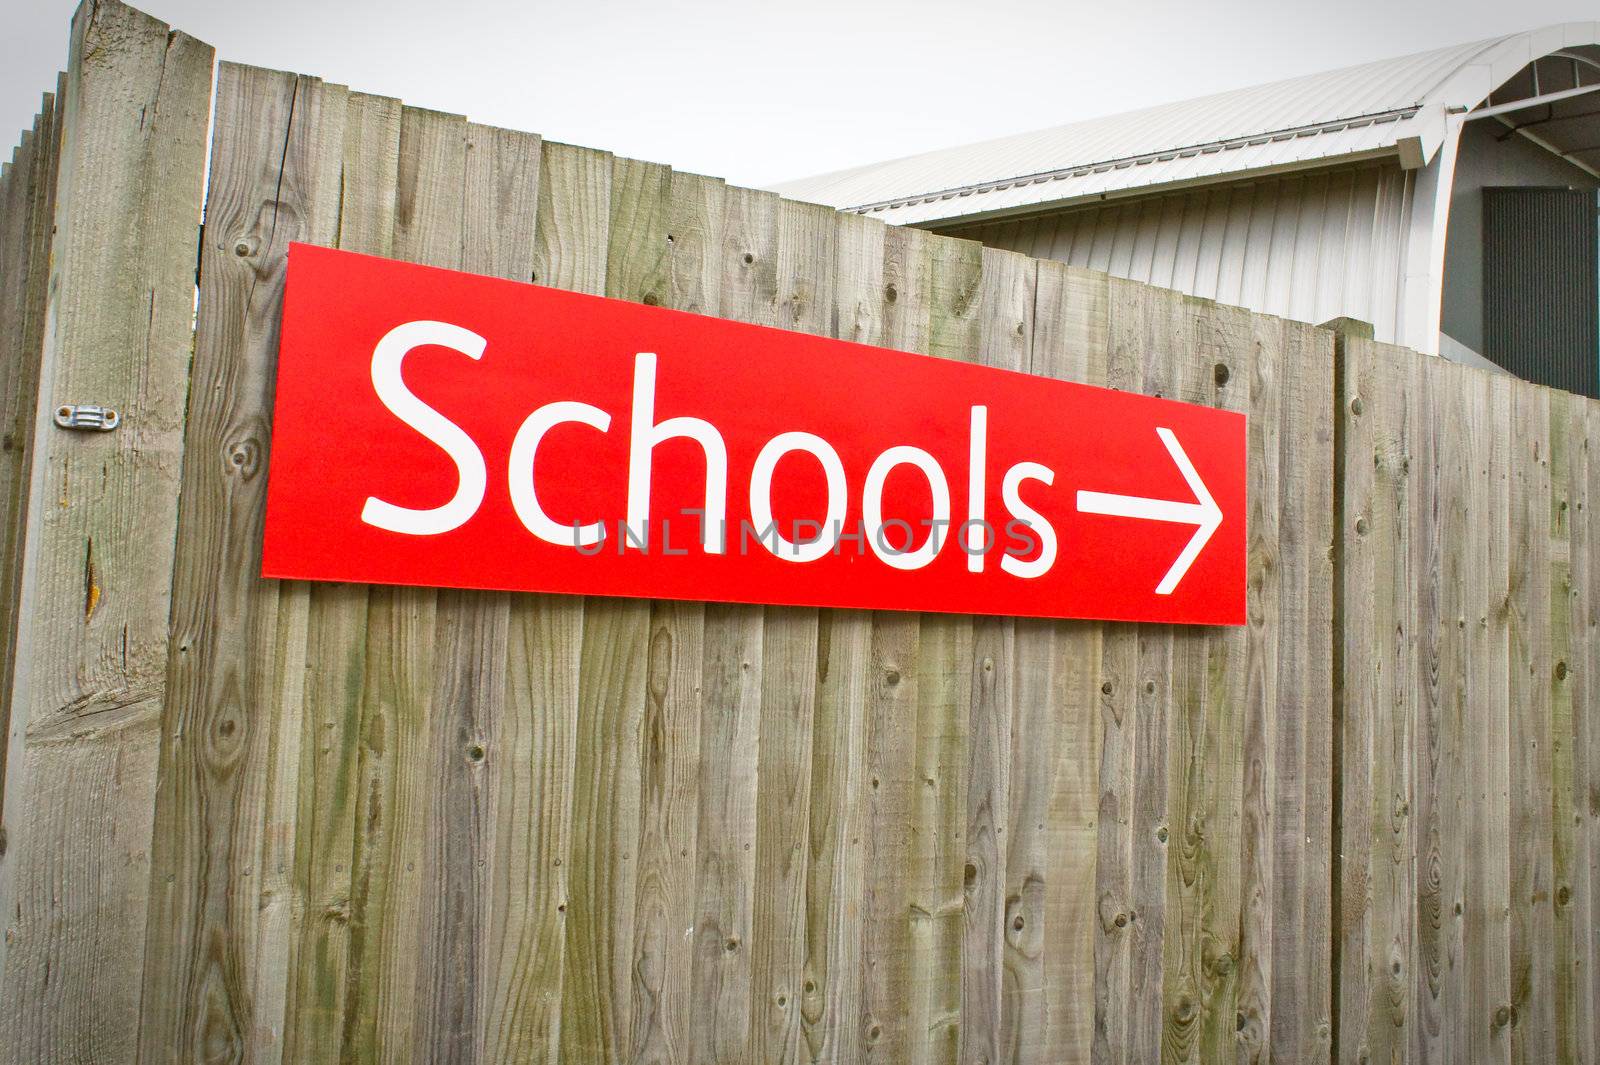 School sign by trgowanlock